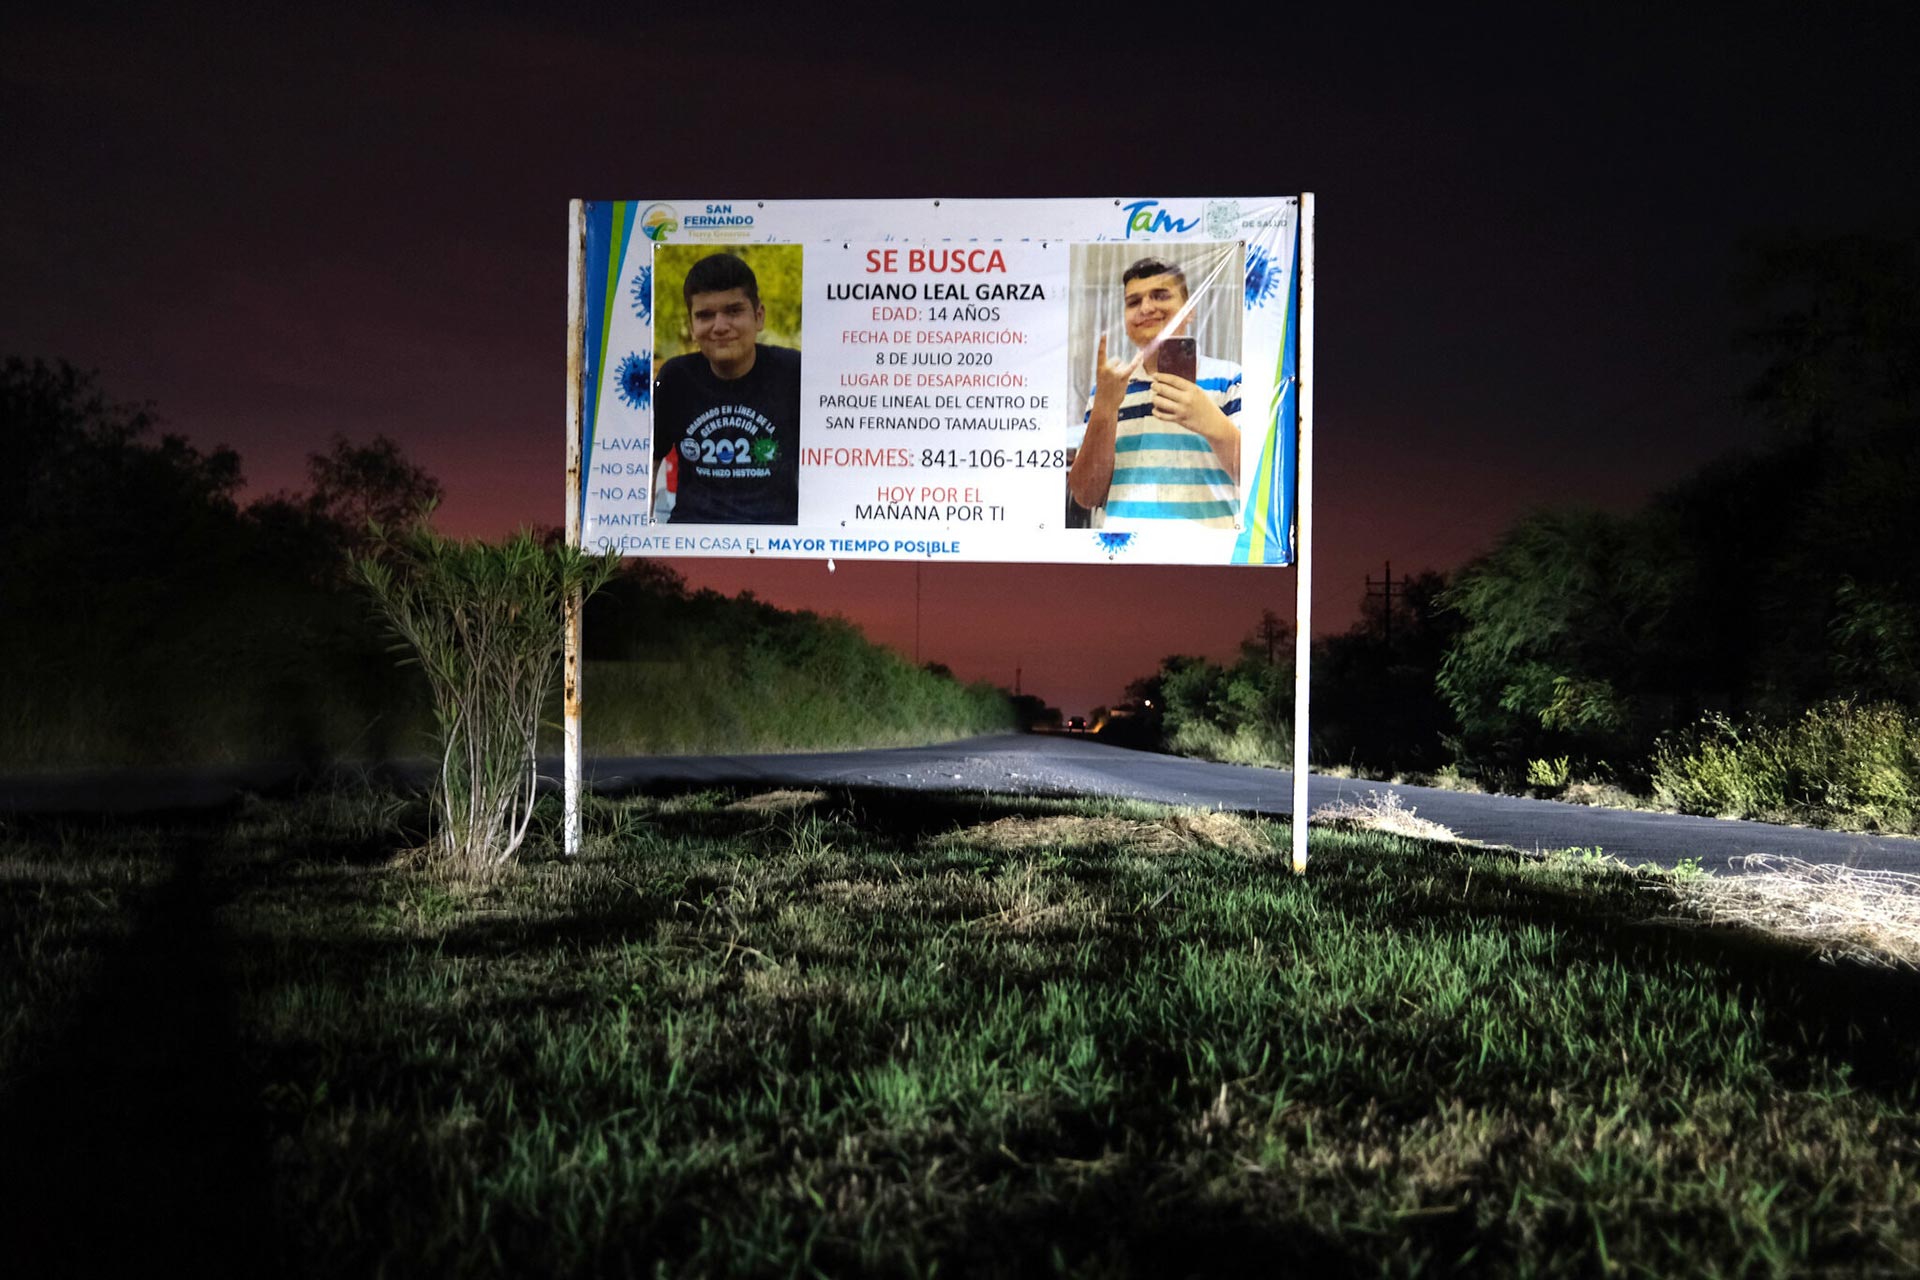 Durante la larga búsqueda de Luciano Leal Garza, quien fue llevado a un parque donde lo secuestraron, se pusieron carteles y letreros por todo San Fernando